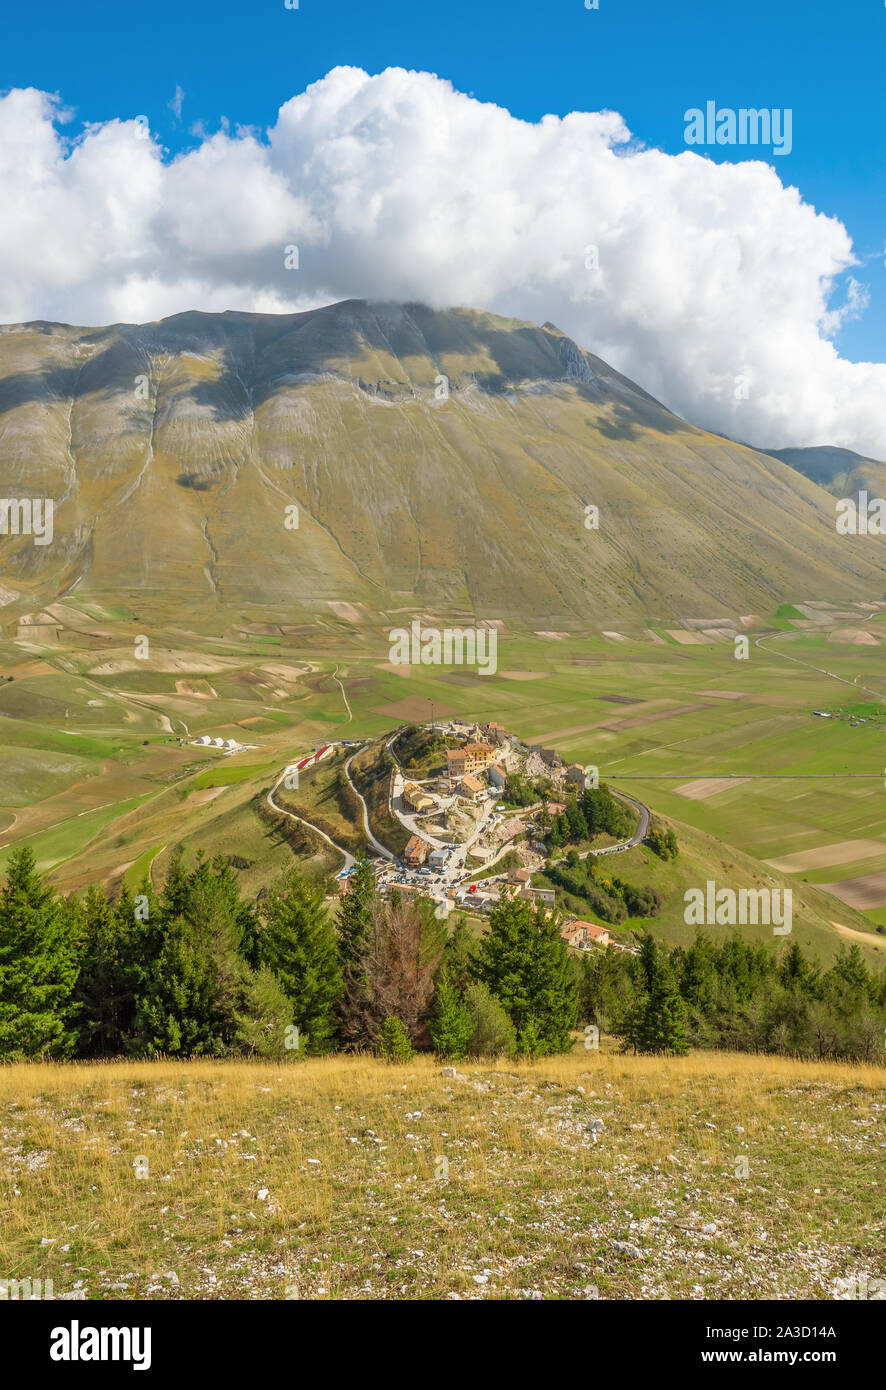 Castelluccio Di Norcia, 2019 (Umbrien, Italien) - Die berühmte Landschaft Hochland der Sibillinischen Berge, während der Herbst mit den kleinen Stone Village Stockfoto